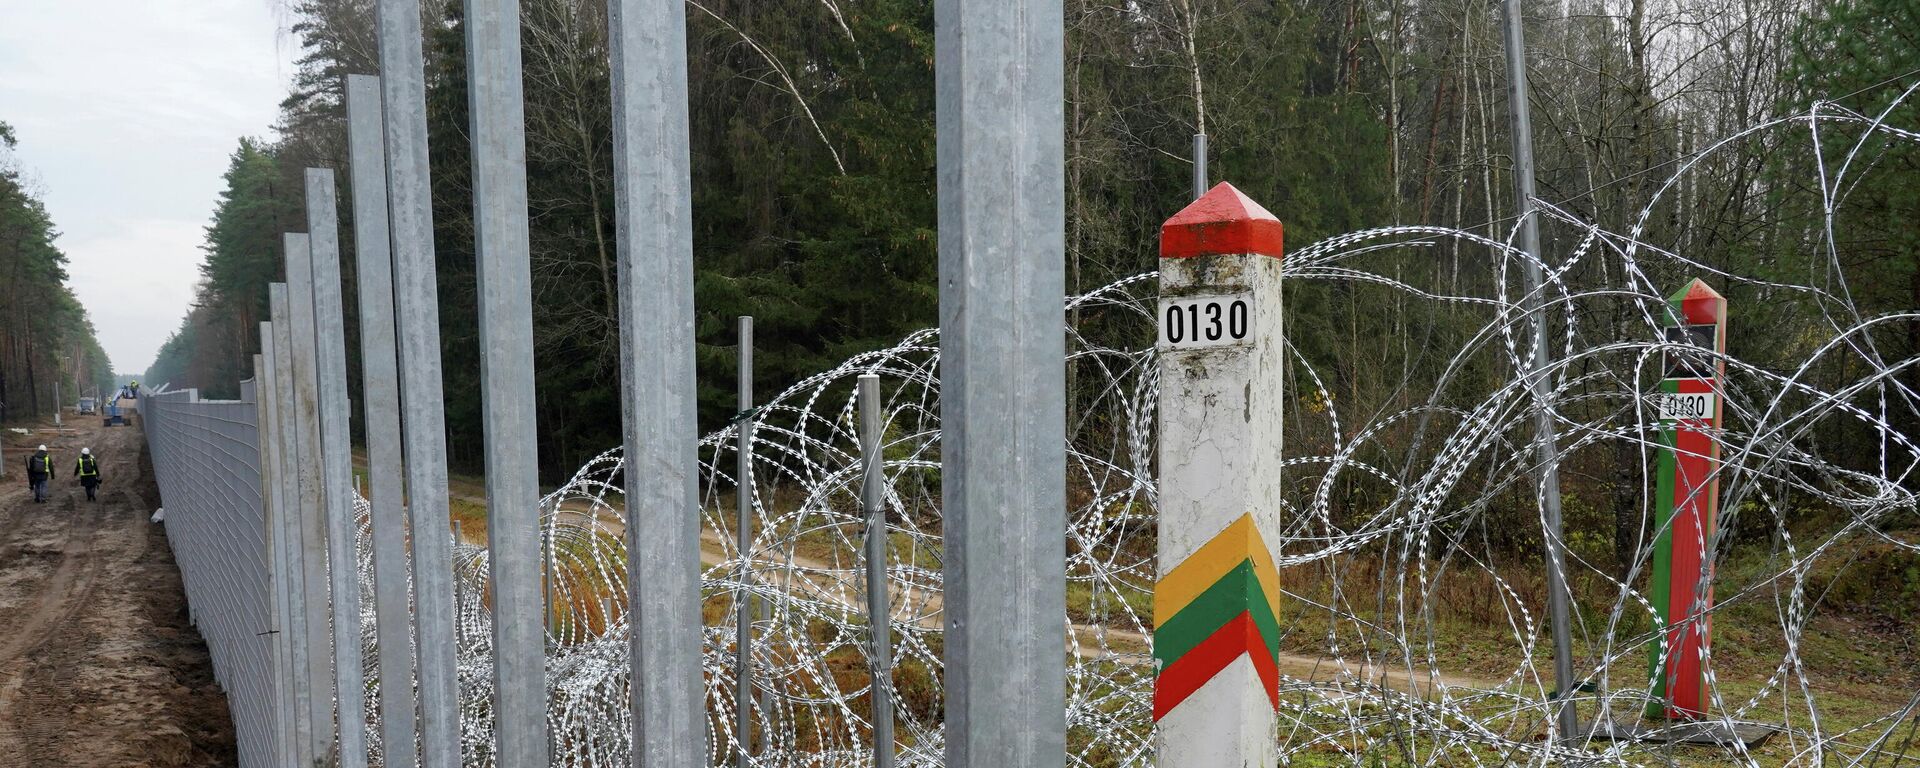 Забор и приграничные столбы на границе Литвы и Белоруссии - Sputnik Литва, 1920, 11.11.2021